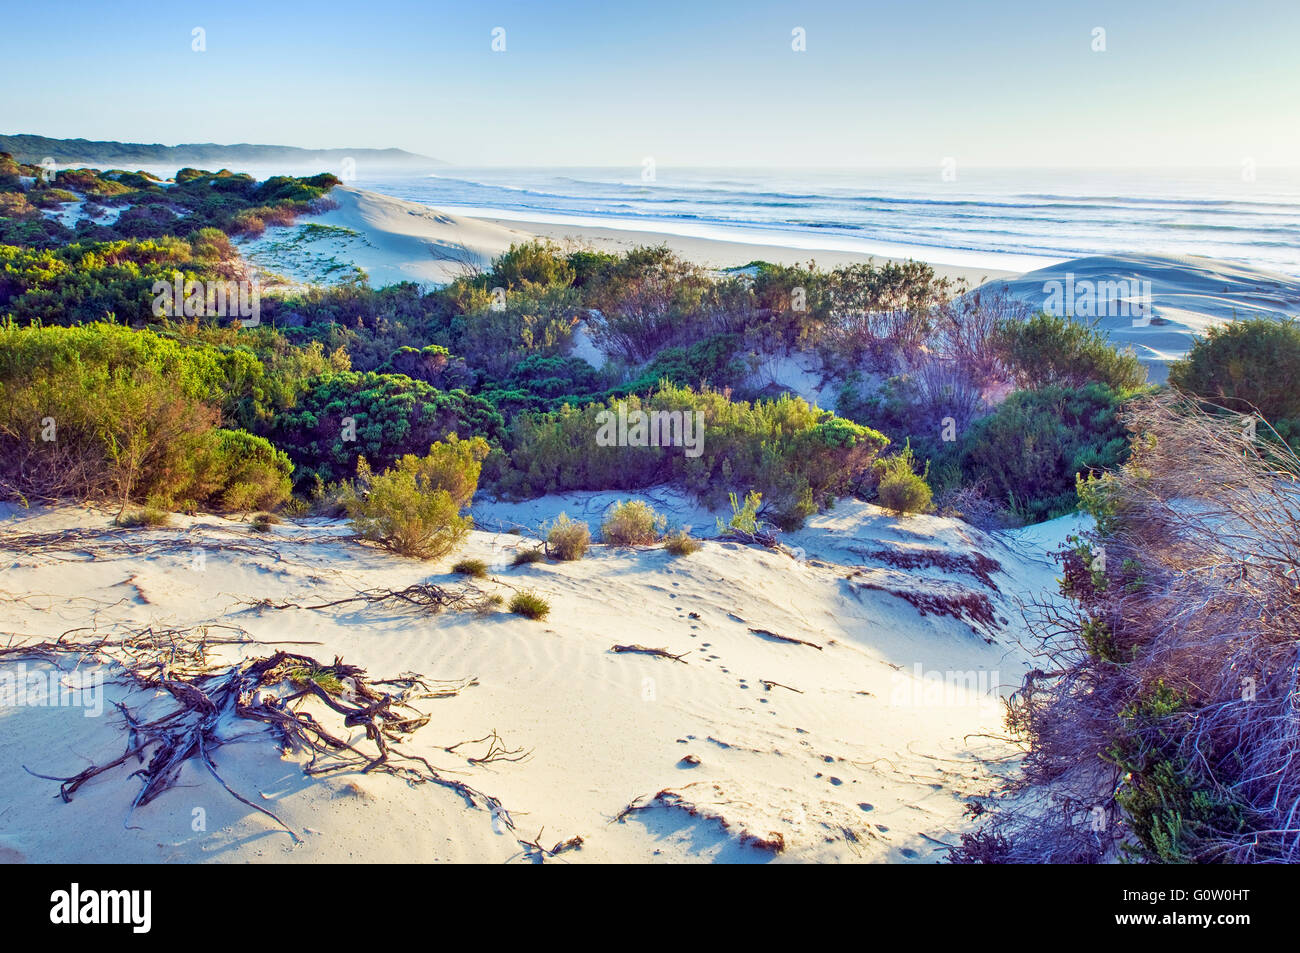 Eine typische Sanddüne und Küstenvegetation der Eastern Cape Coast in Südafrika Stockfoto